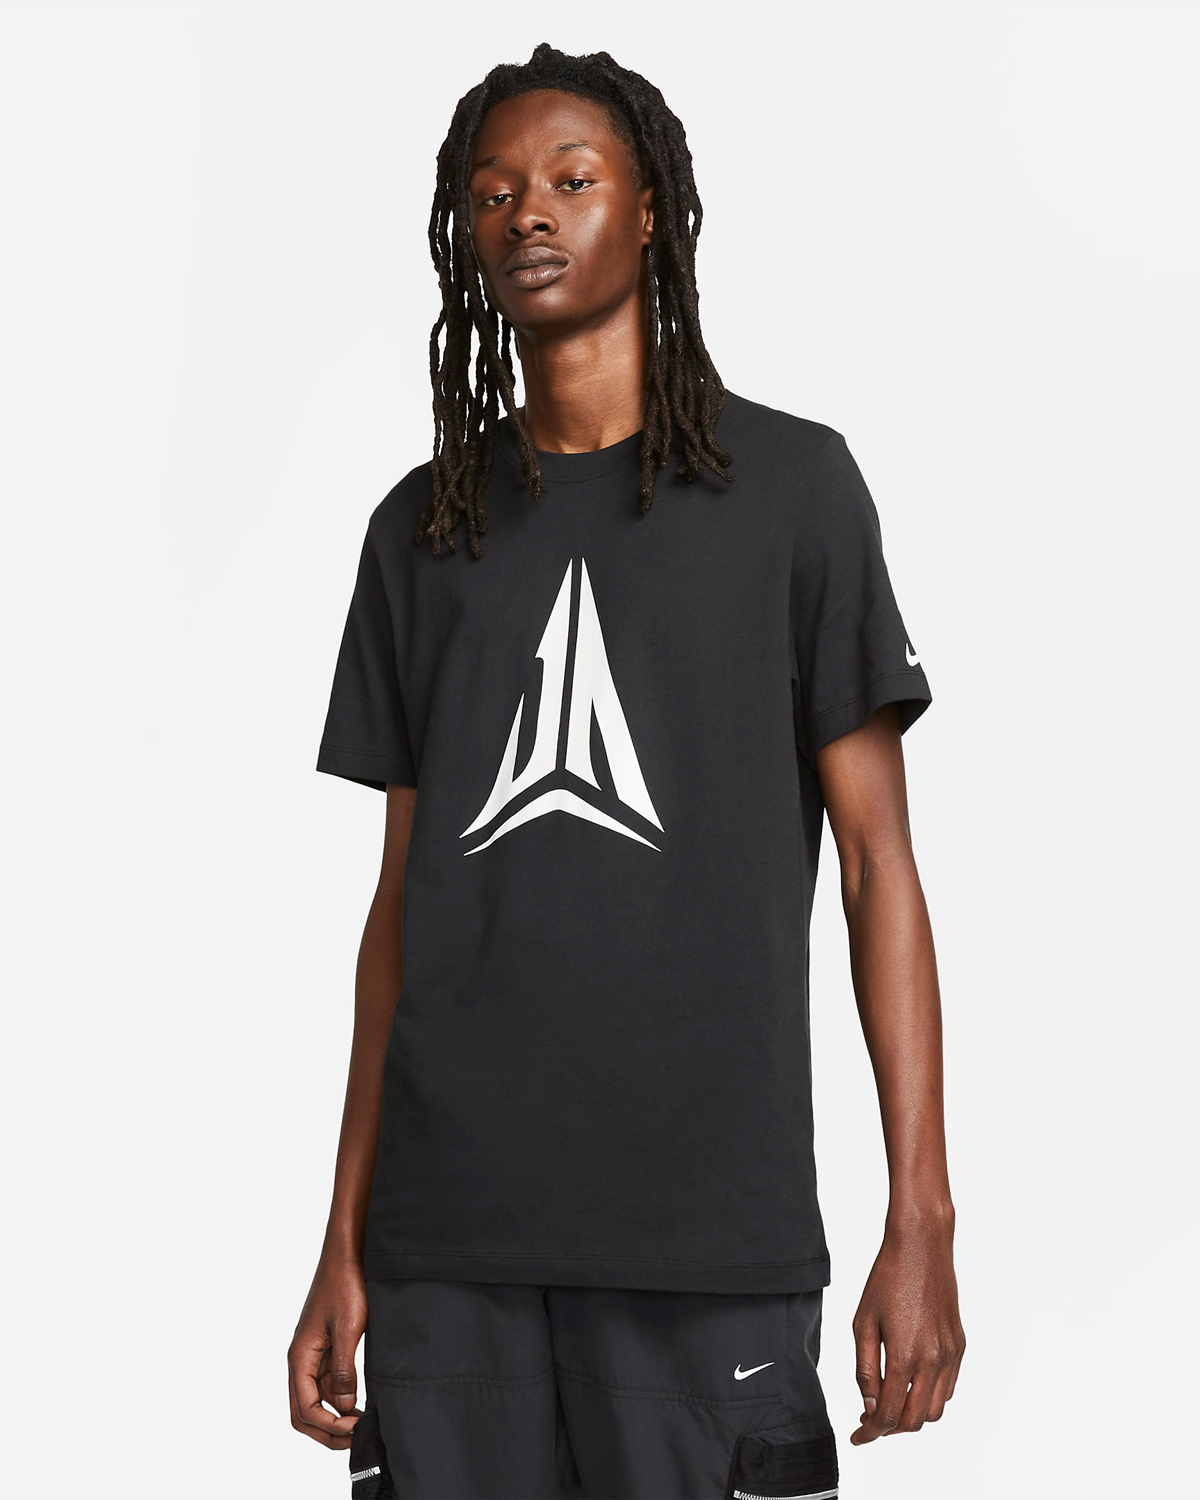 Nike-Ja-Morant-Logo-T-Shirt-Black-White